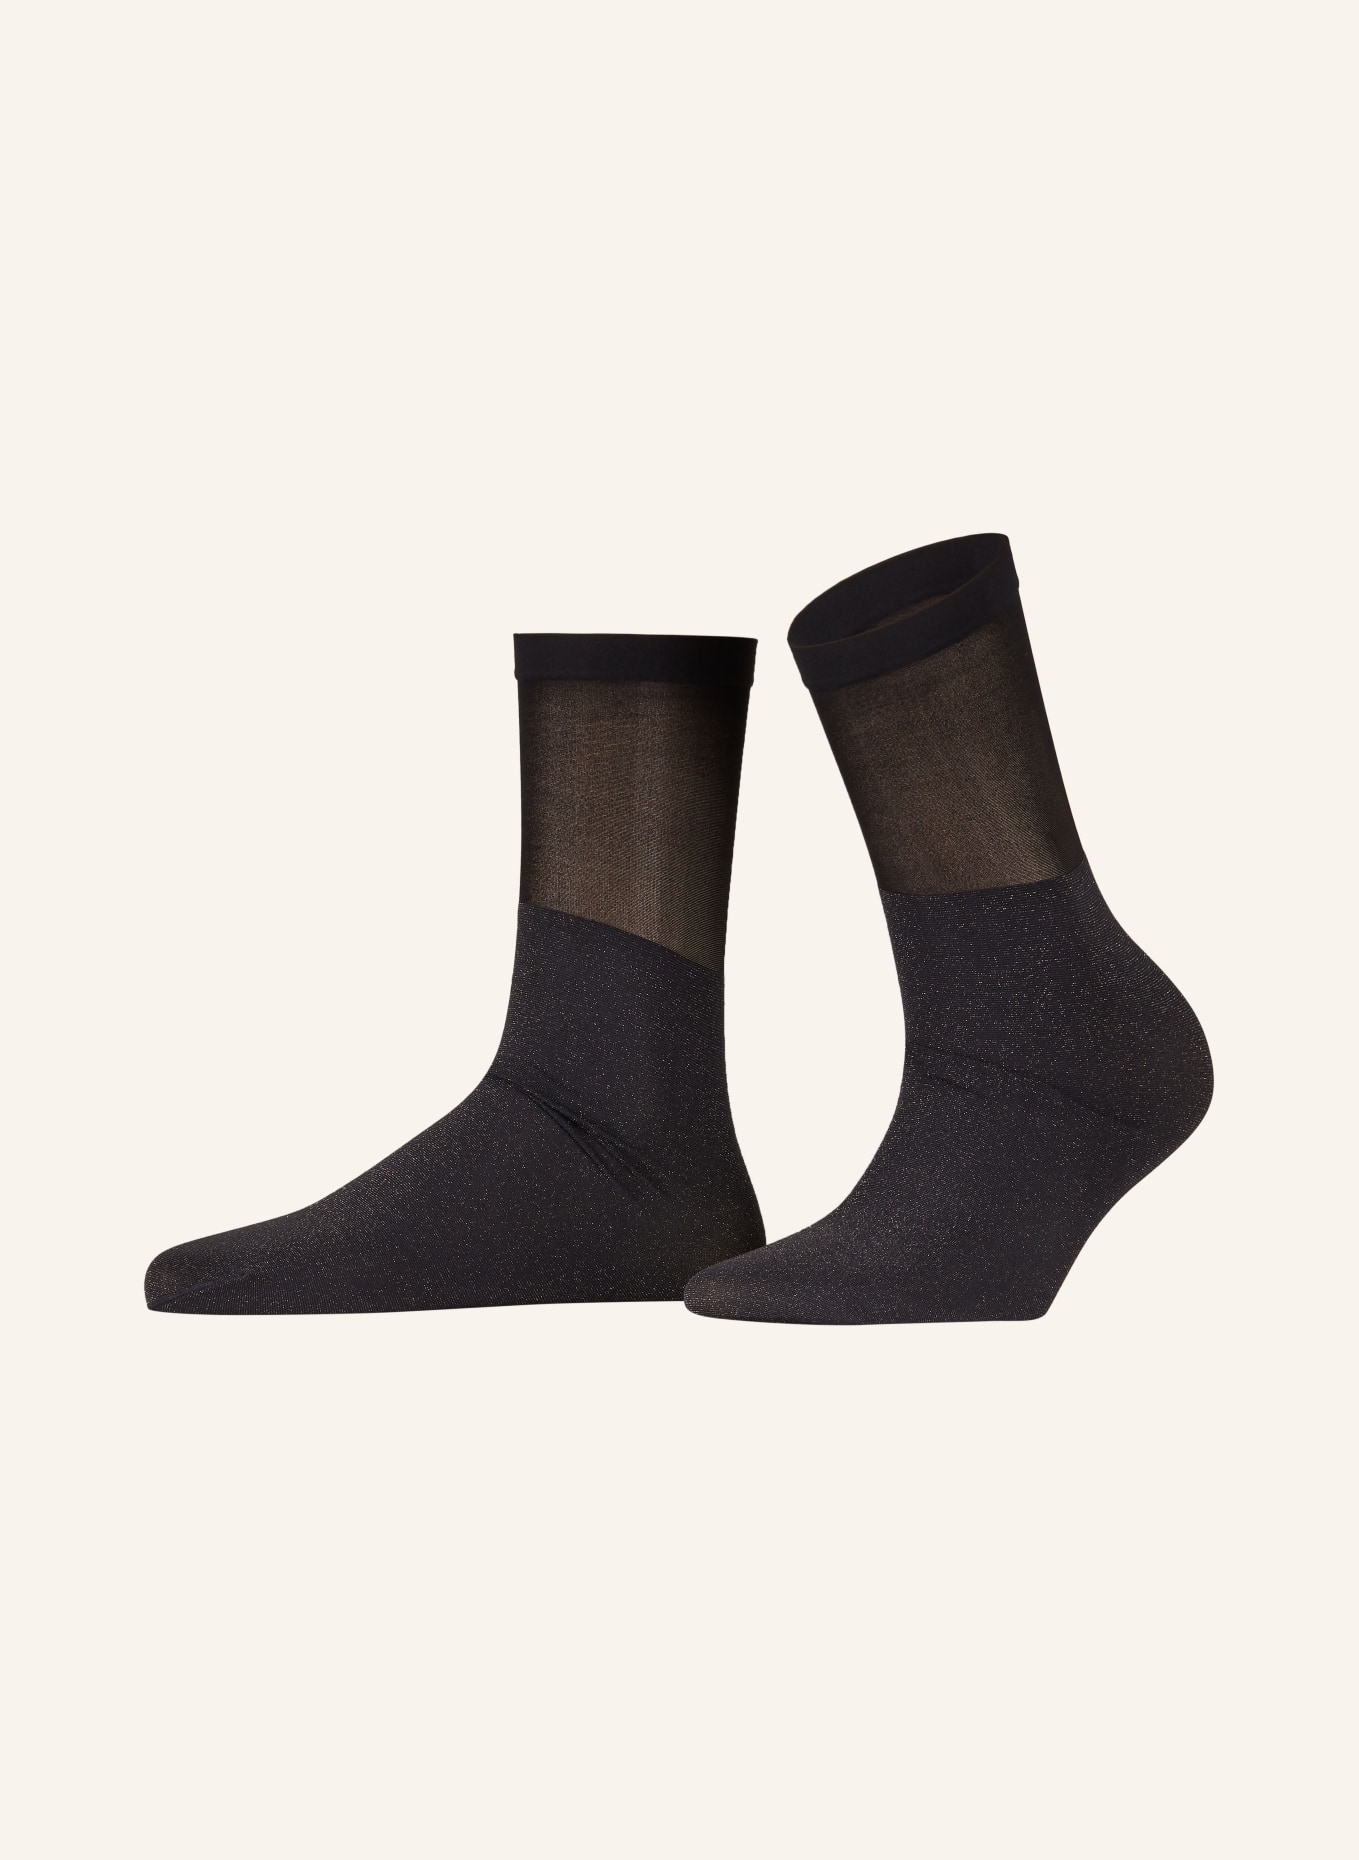 Soft merino socks - Wolford - Women